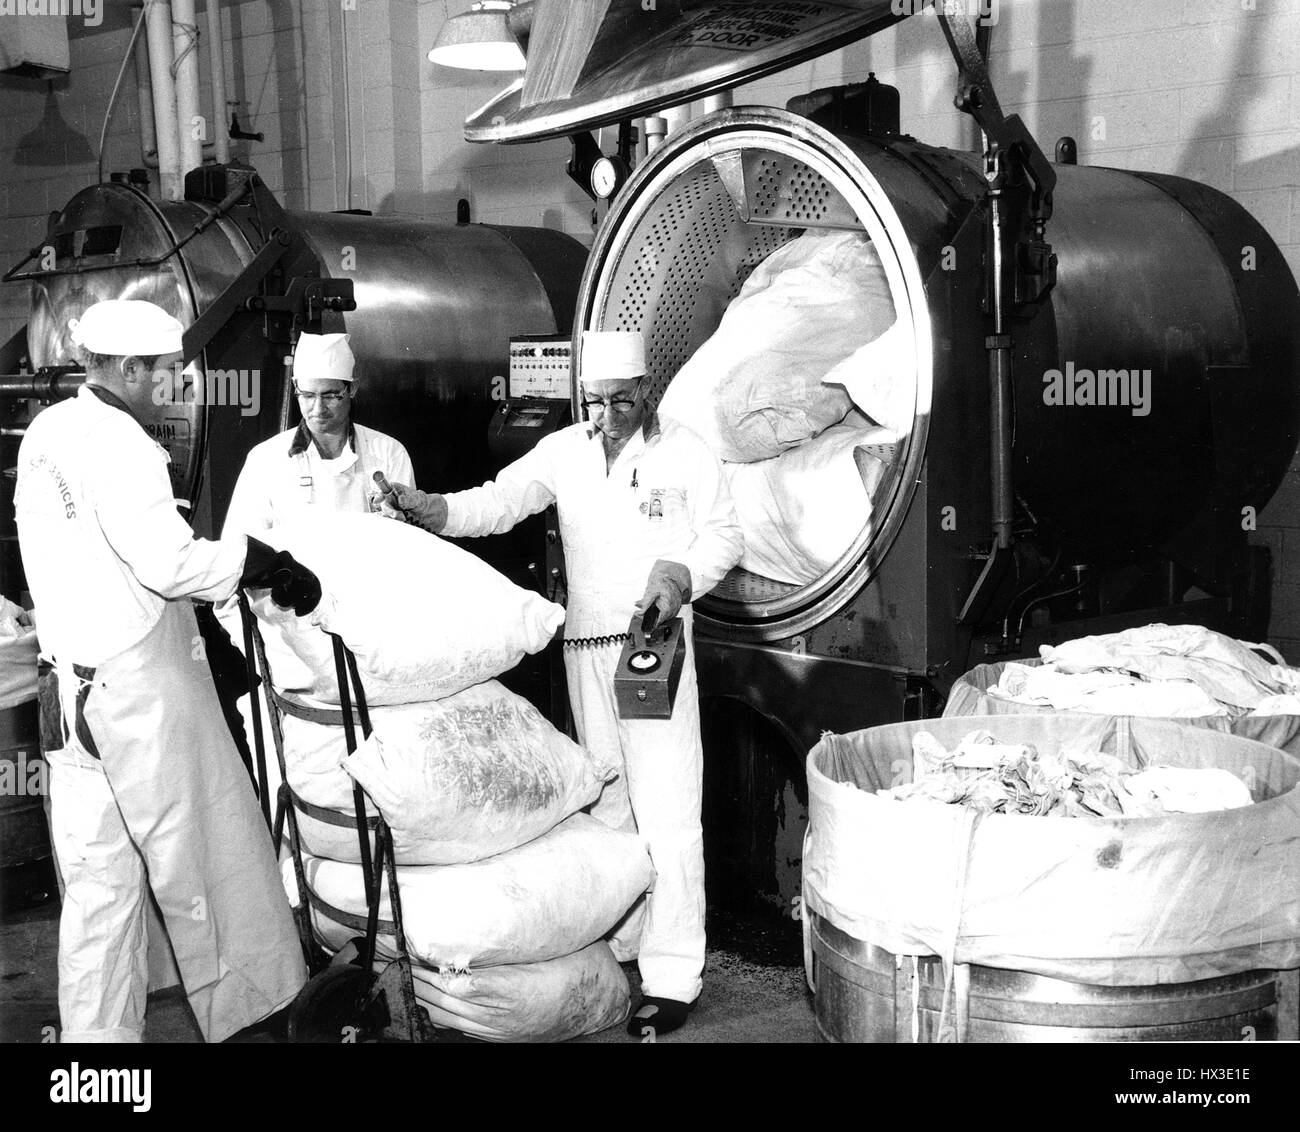 Blanchisseurs charger une capacité de 400 livres à la rondelle à la blanchisserie de décontamination Projet Hanford, Washington, 1968. Image courtoisie du département américain de l'énergie. Banque D'Images